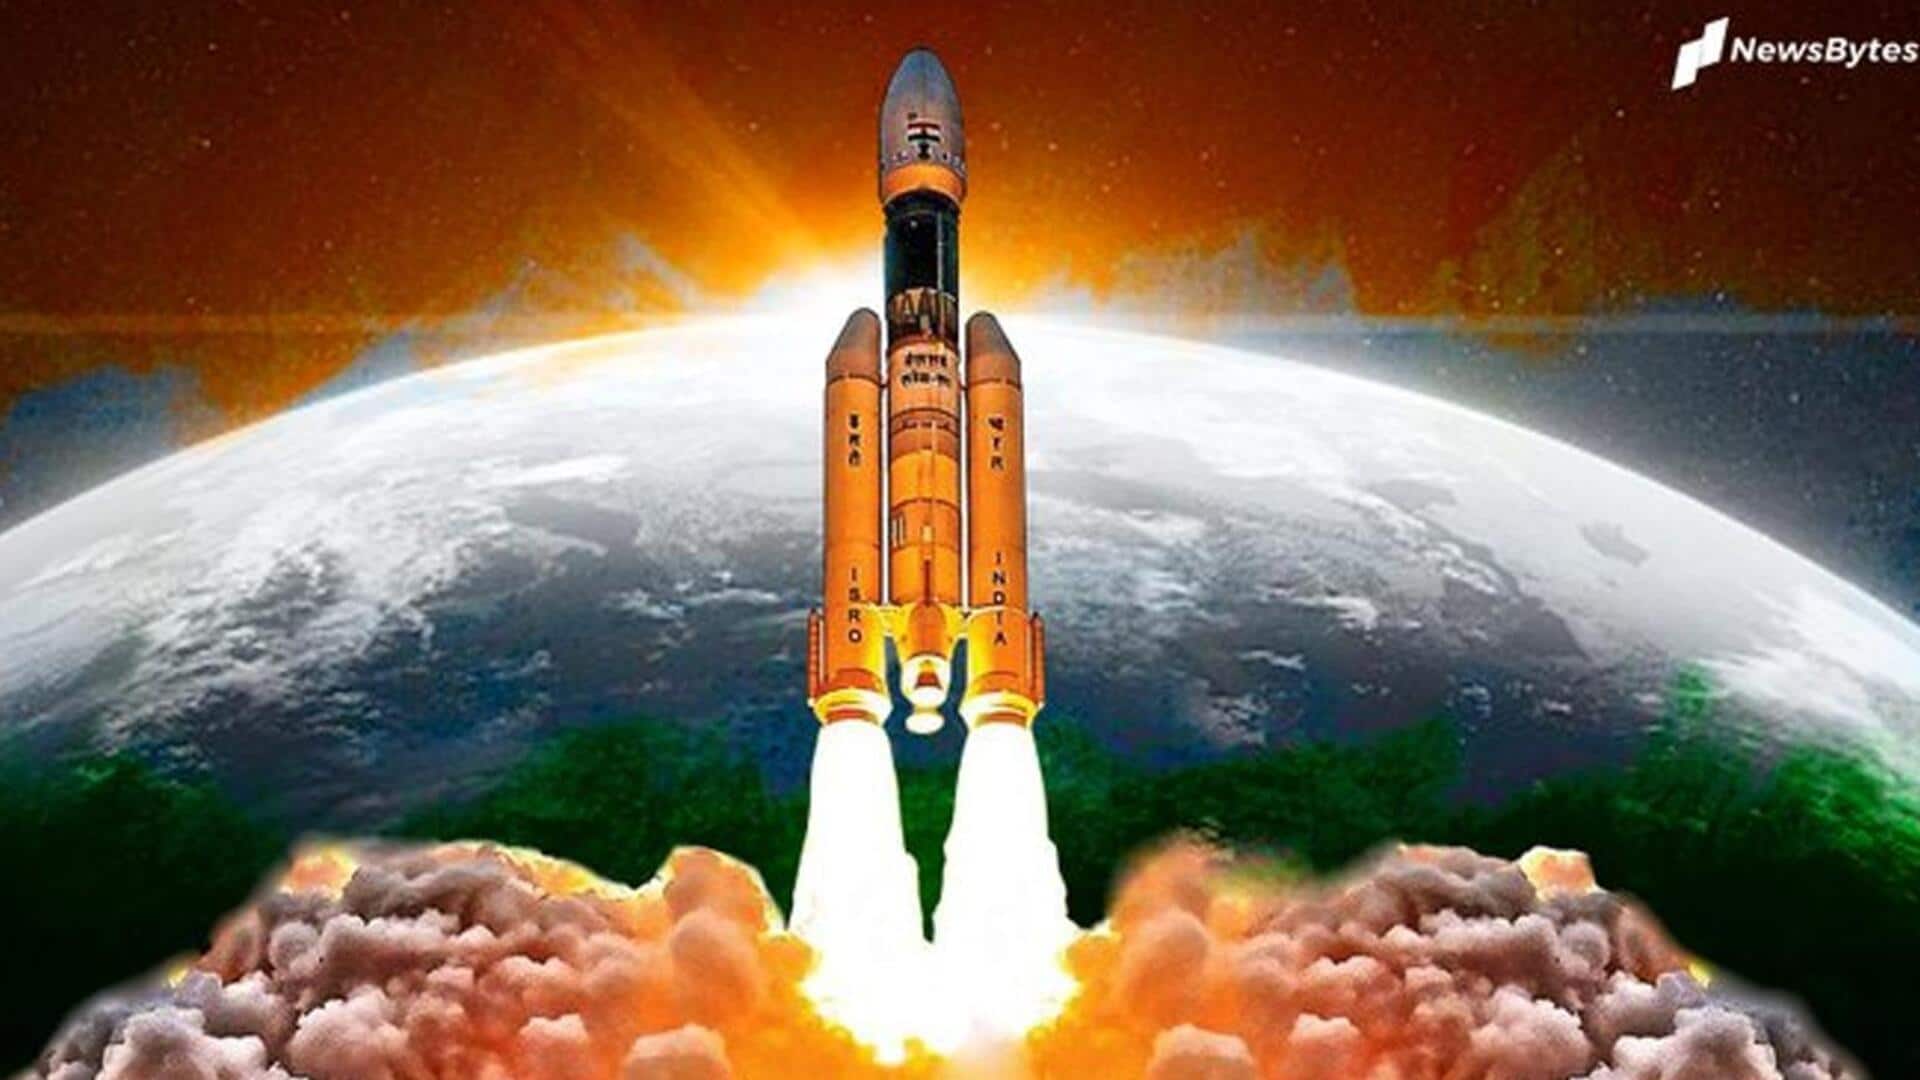 गगनयान मिशन: अक्टूबर में होगी टेस्ट फ्लाइट, अंतरिक्ष में जाएगी महिला रोबोट